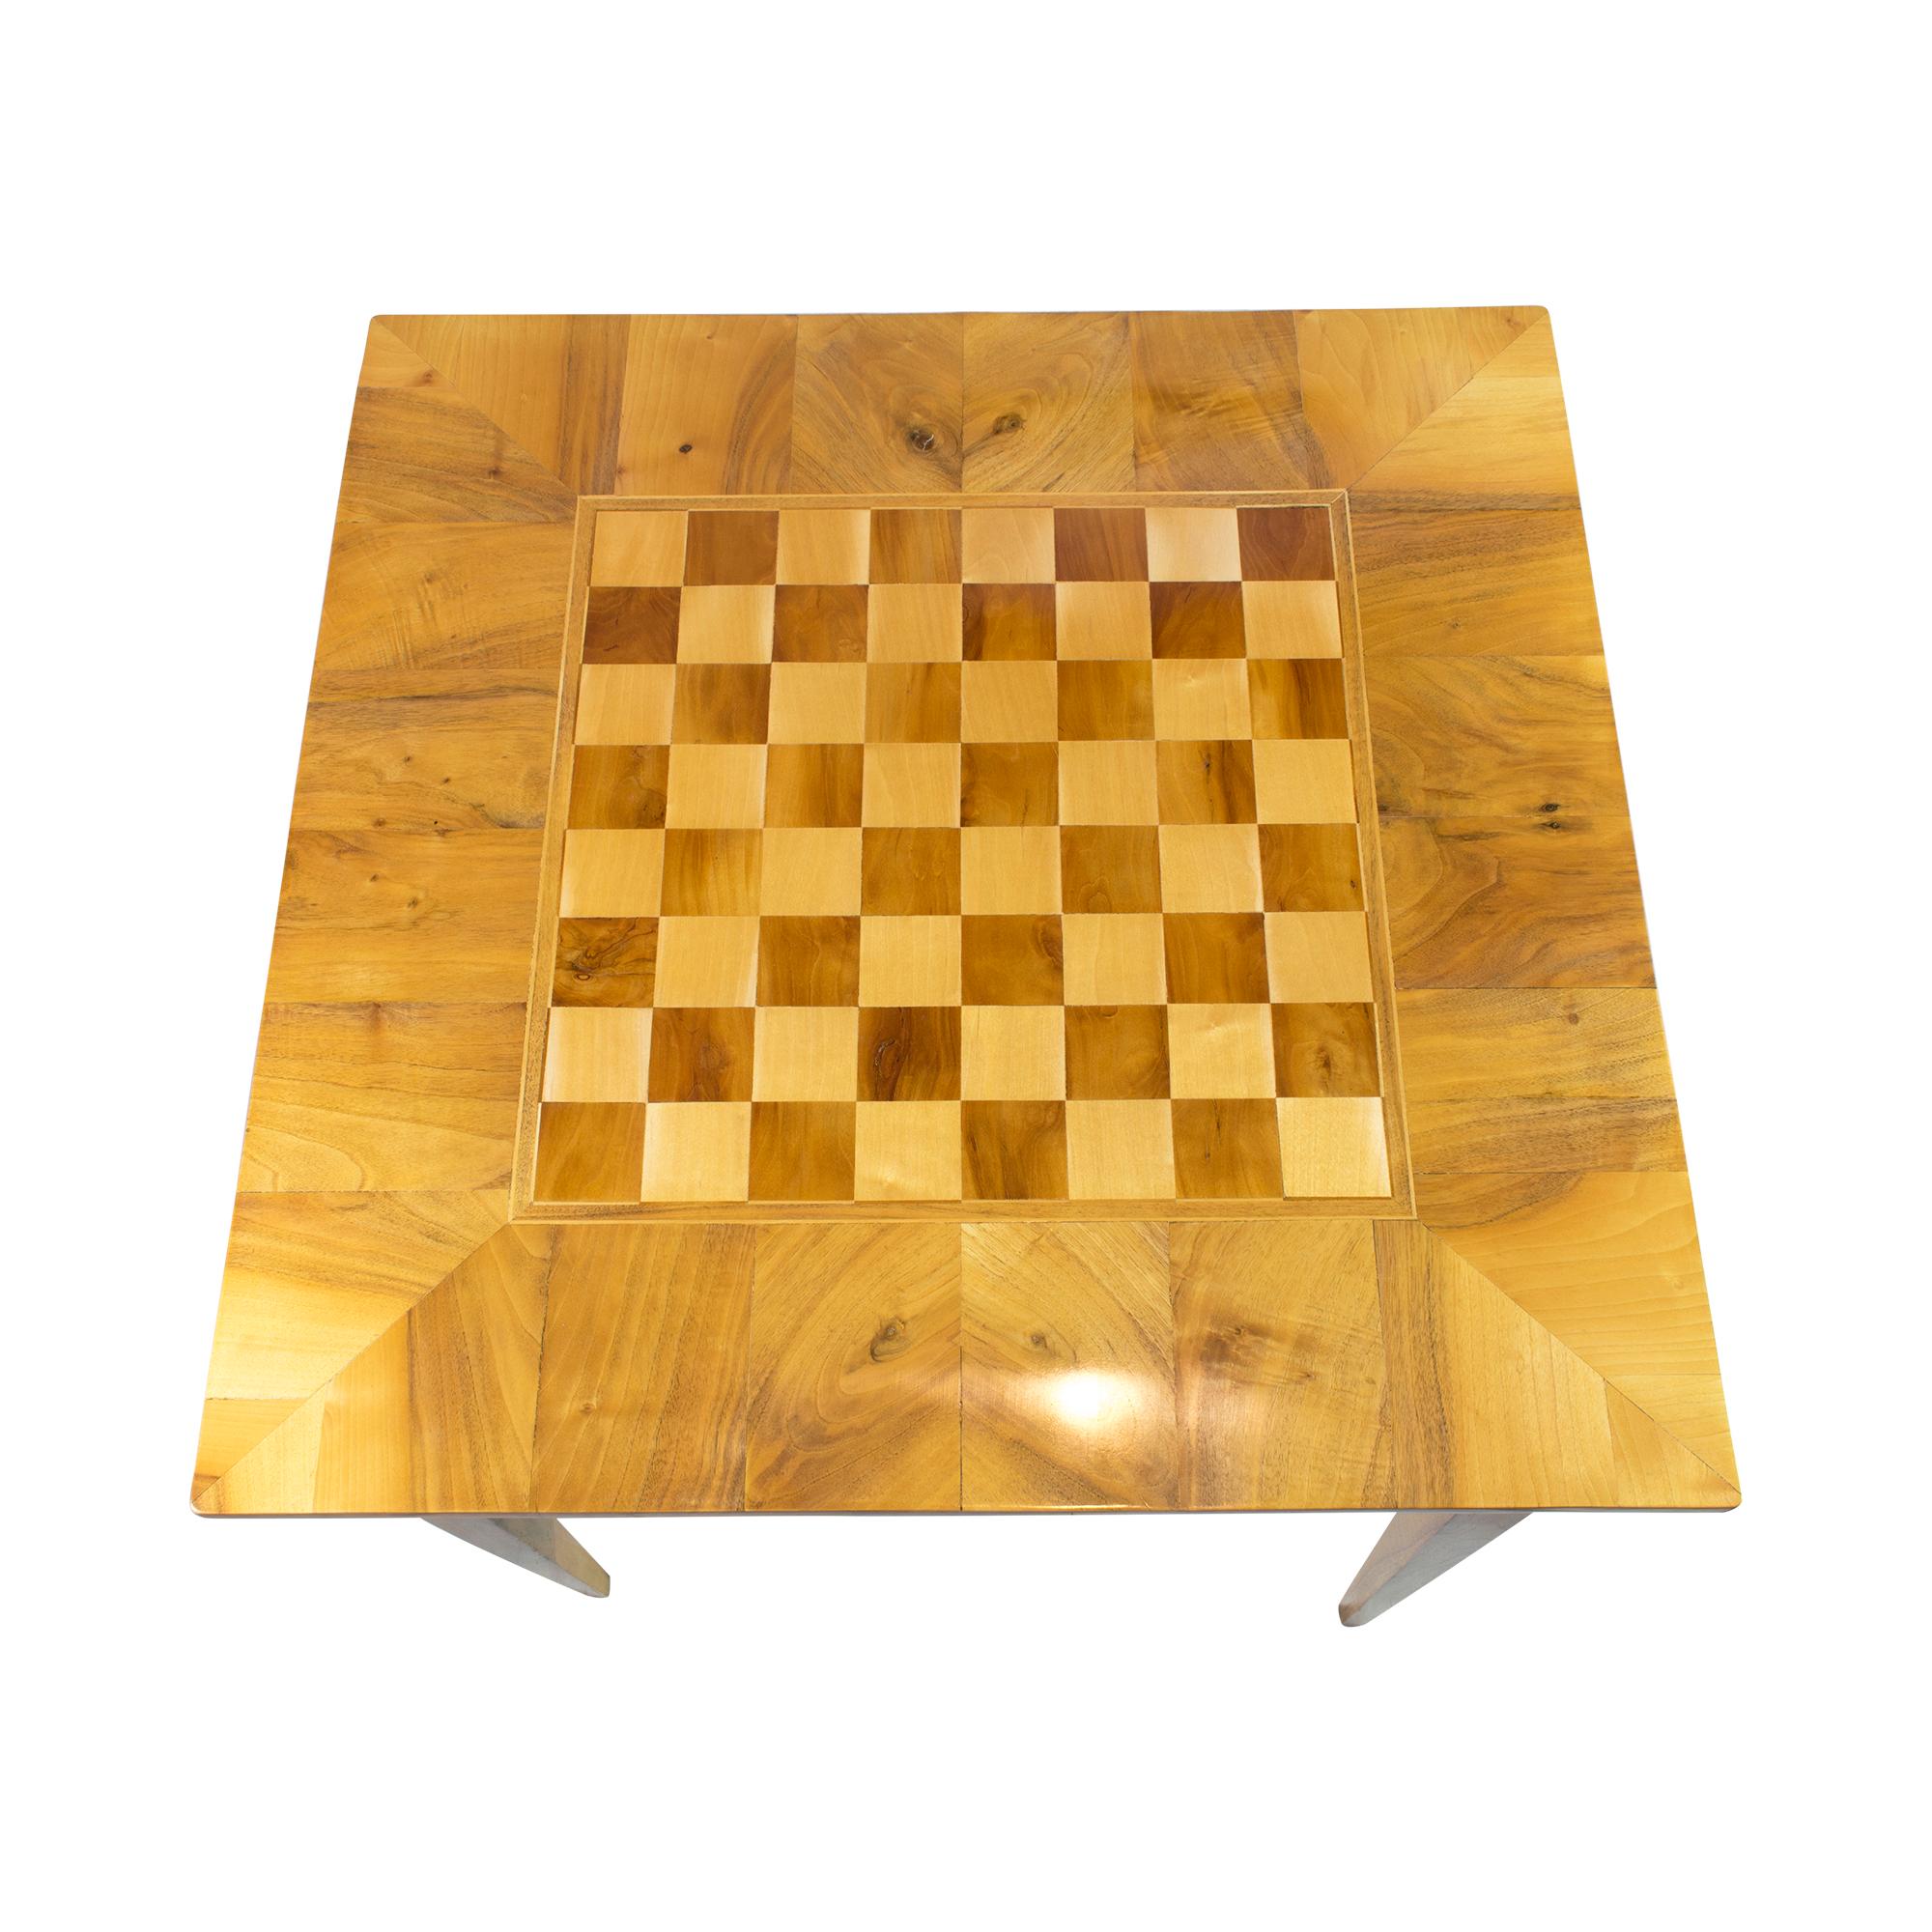 Ein klassischer Biedermeiertisch aus dieser Zeit. Der Tisch wurde hauptsächlich aus Walnussholz gefertigt. Auf der Oberfläche befindet sich ein großes Schachbrett aus Ahorn- und Nussbaumholz, das mit Intarsien verziert ist. Der Tisch steht auf vier